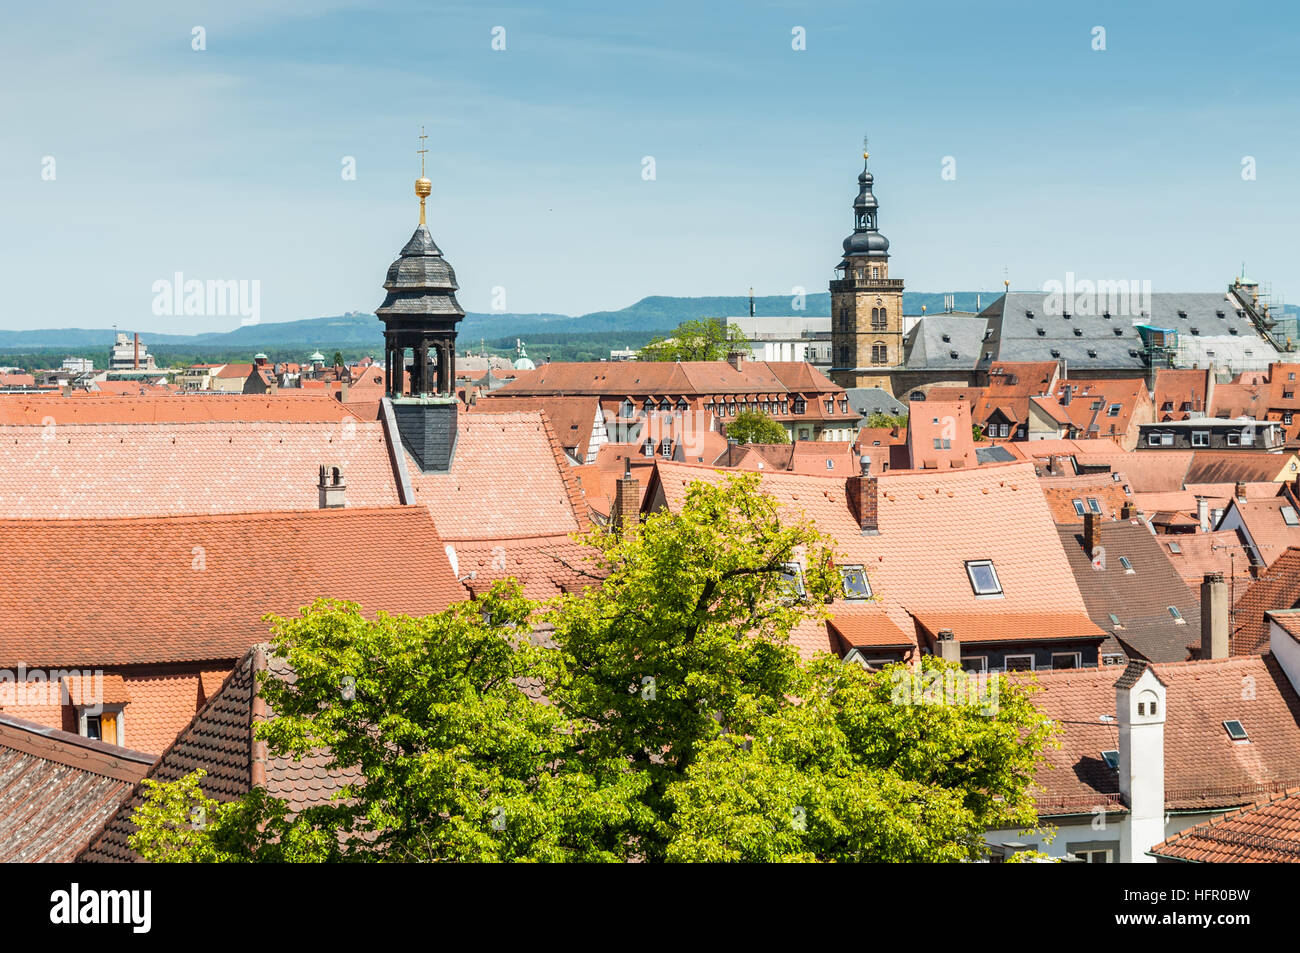 Blick über die Altstadt von Bamberg, Deutschland. Historische Stadt Zentrum von Bamberg ist ein UNESCO-Weltkulturerbe. Stockfoto